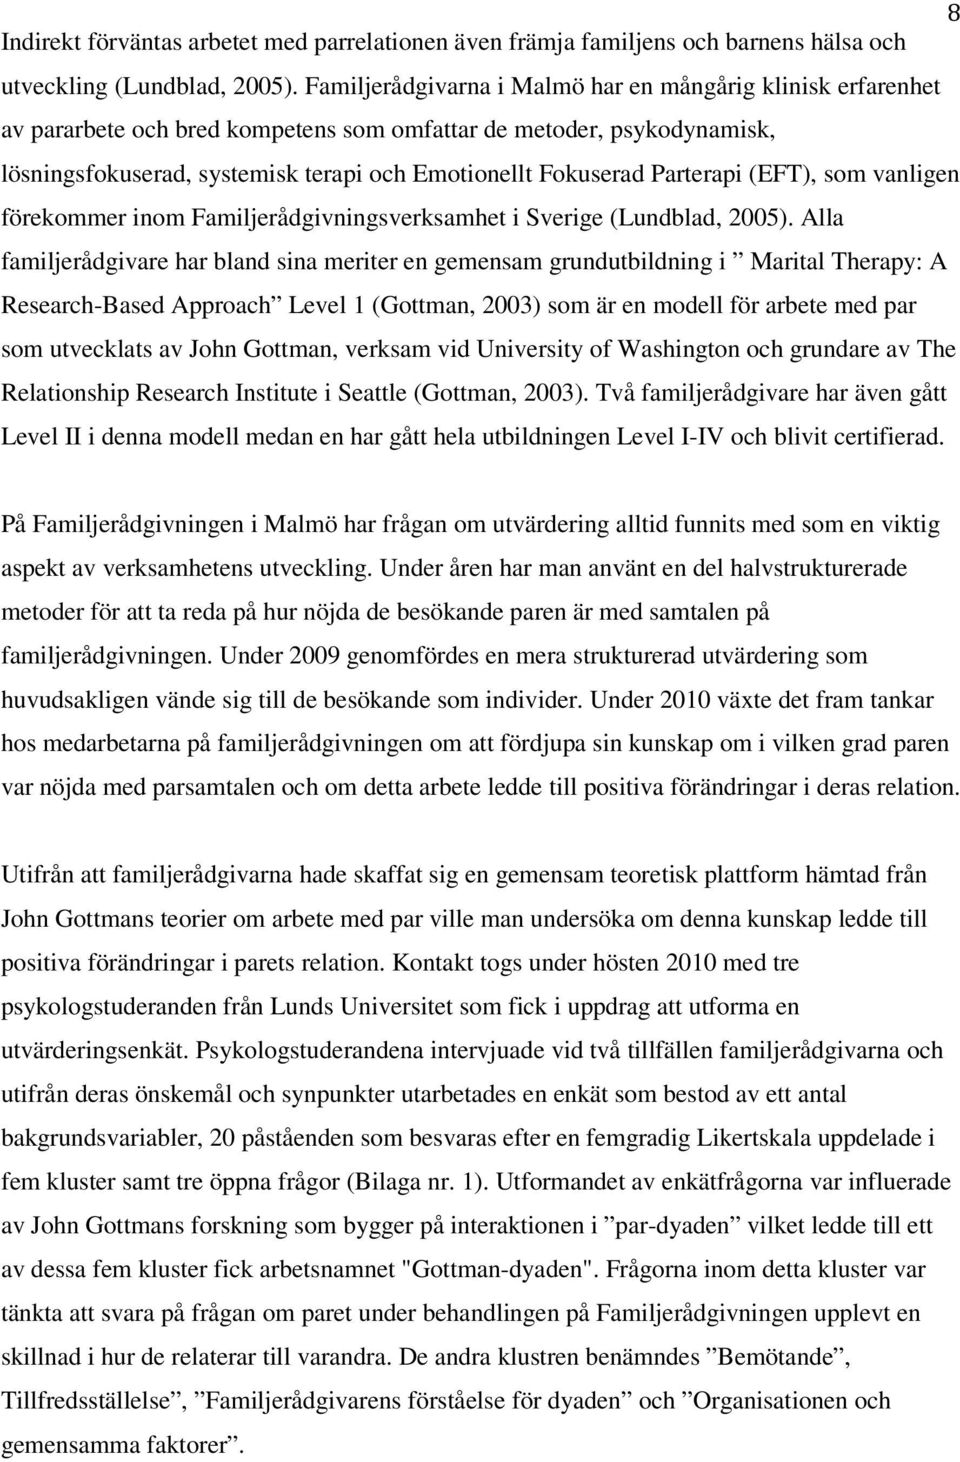 Parterapi (EFT), som vanligen förekommer inom Familjerådgivningsverksamhet i Sverige (Lundblad, 2005).